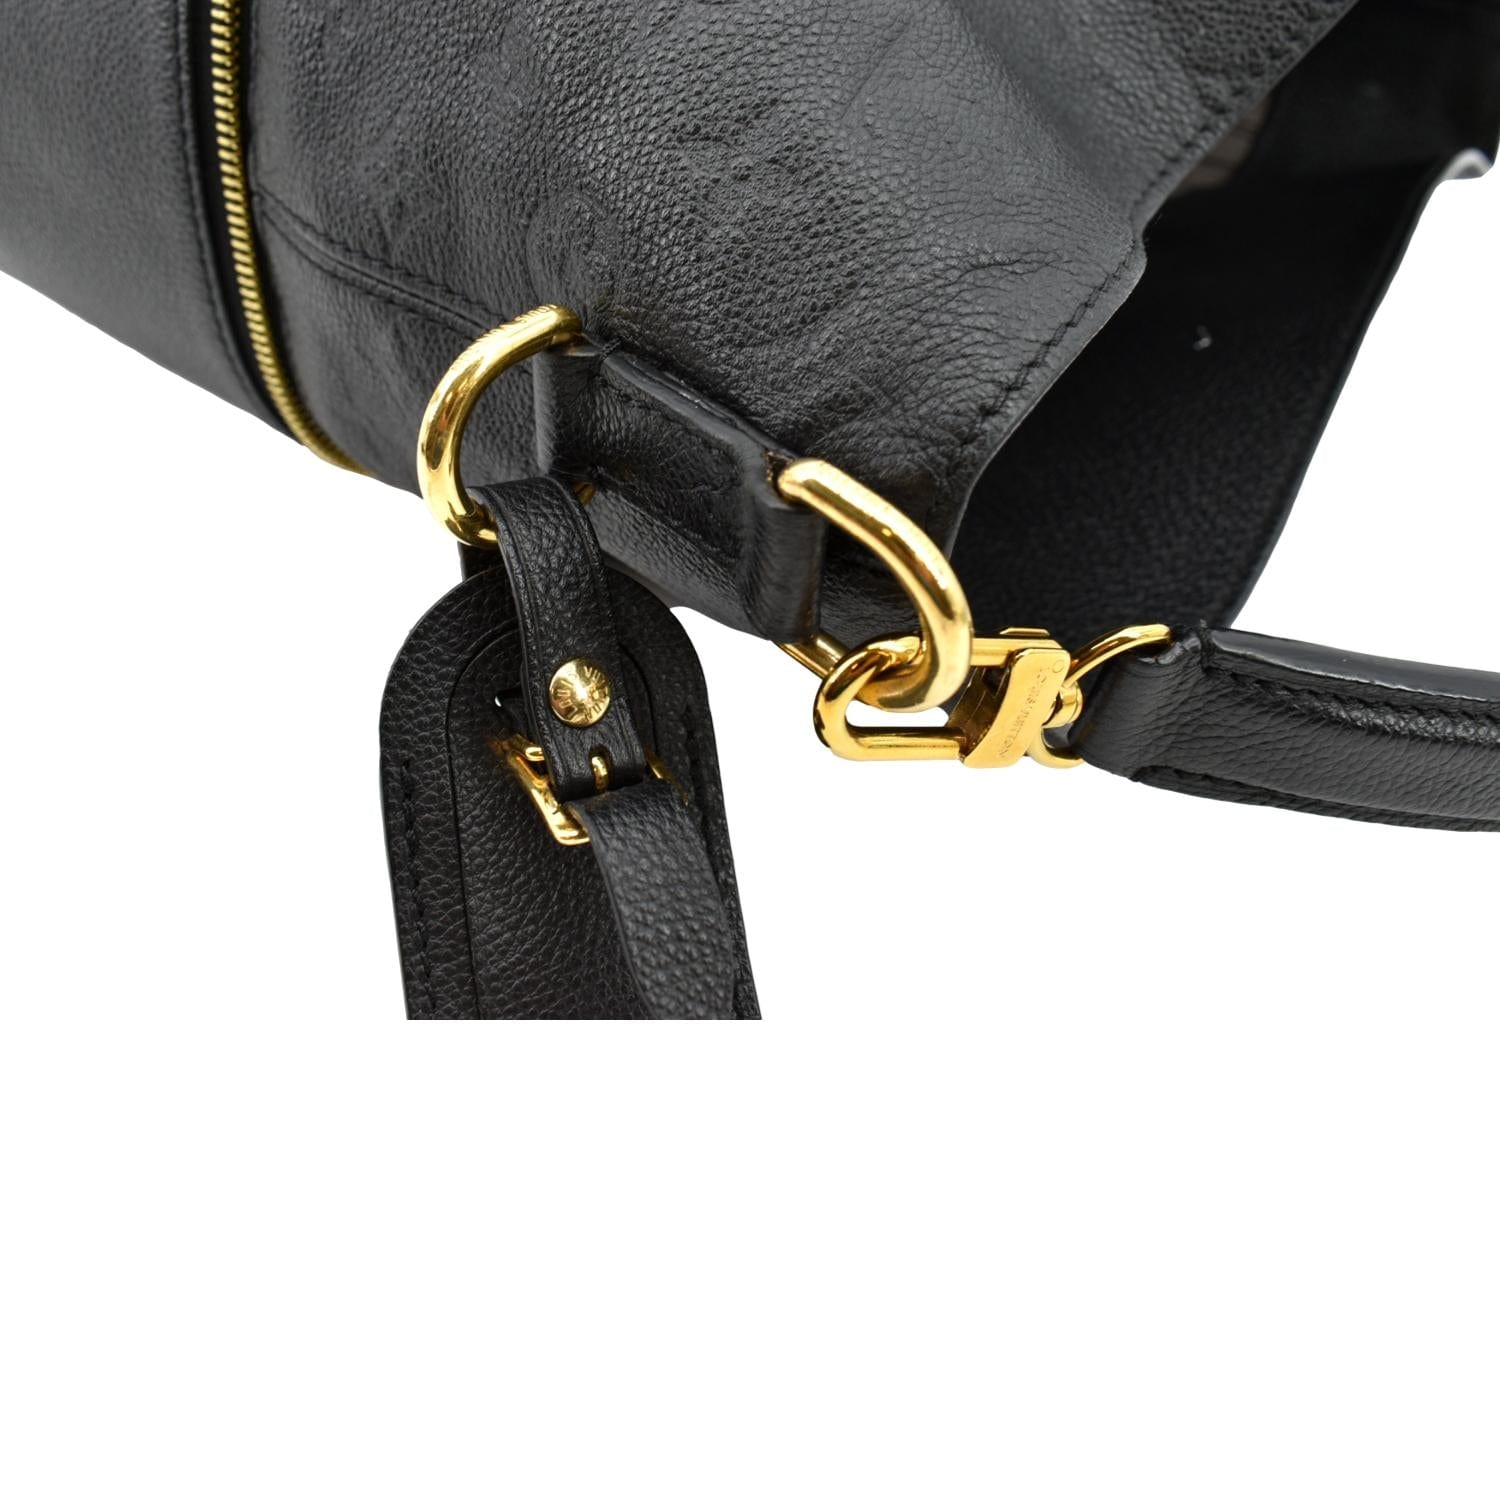 Black Empreinte Leather Melie Bag Gold Hardware, 2019